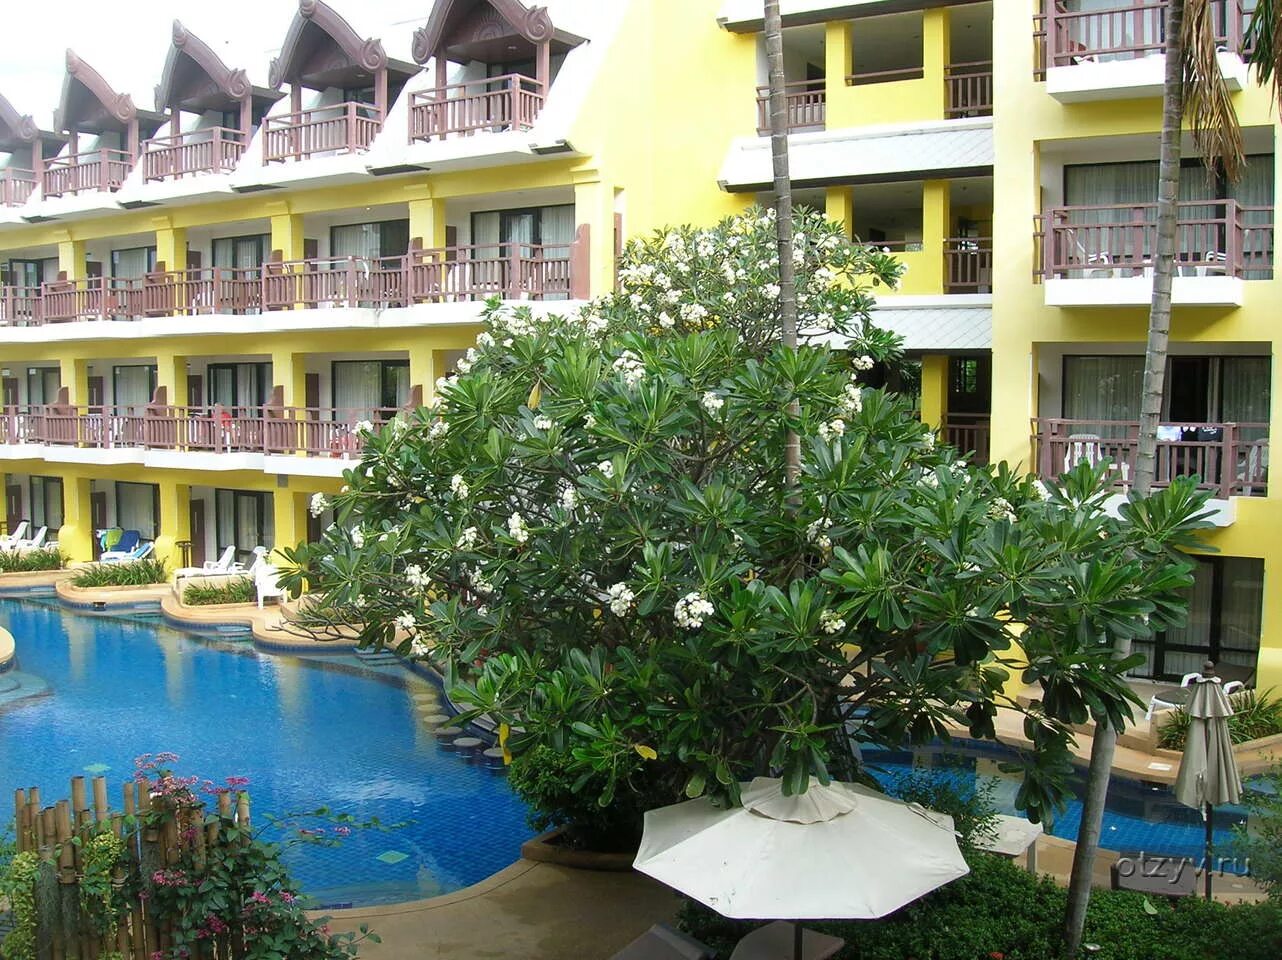 Karonburi resort 4. Ворабури отель Пхукет. Баан Карон бури Пхукет. Baan Karonburi Resort 4 Пхукет. Woraburi Phuket Resort Spa 4.